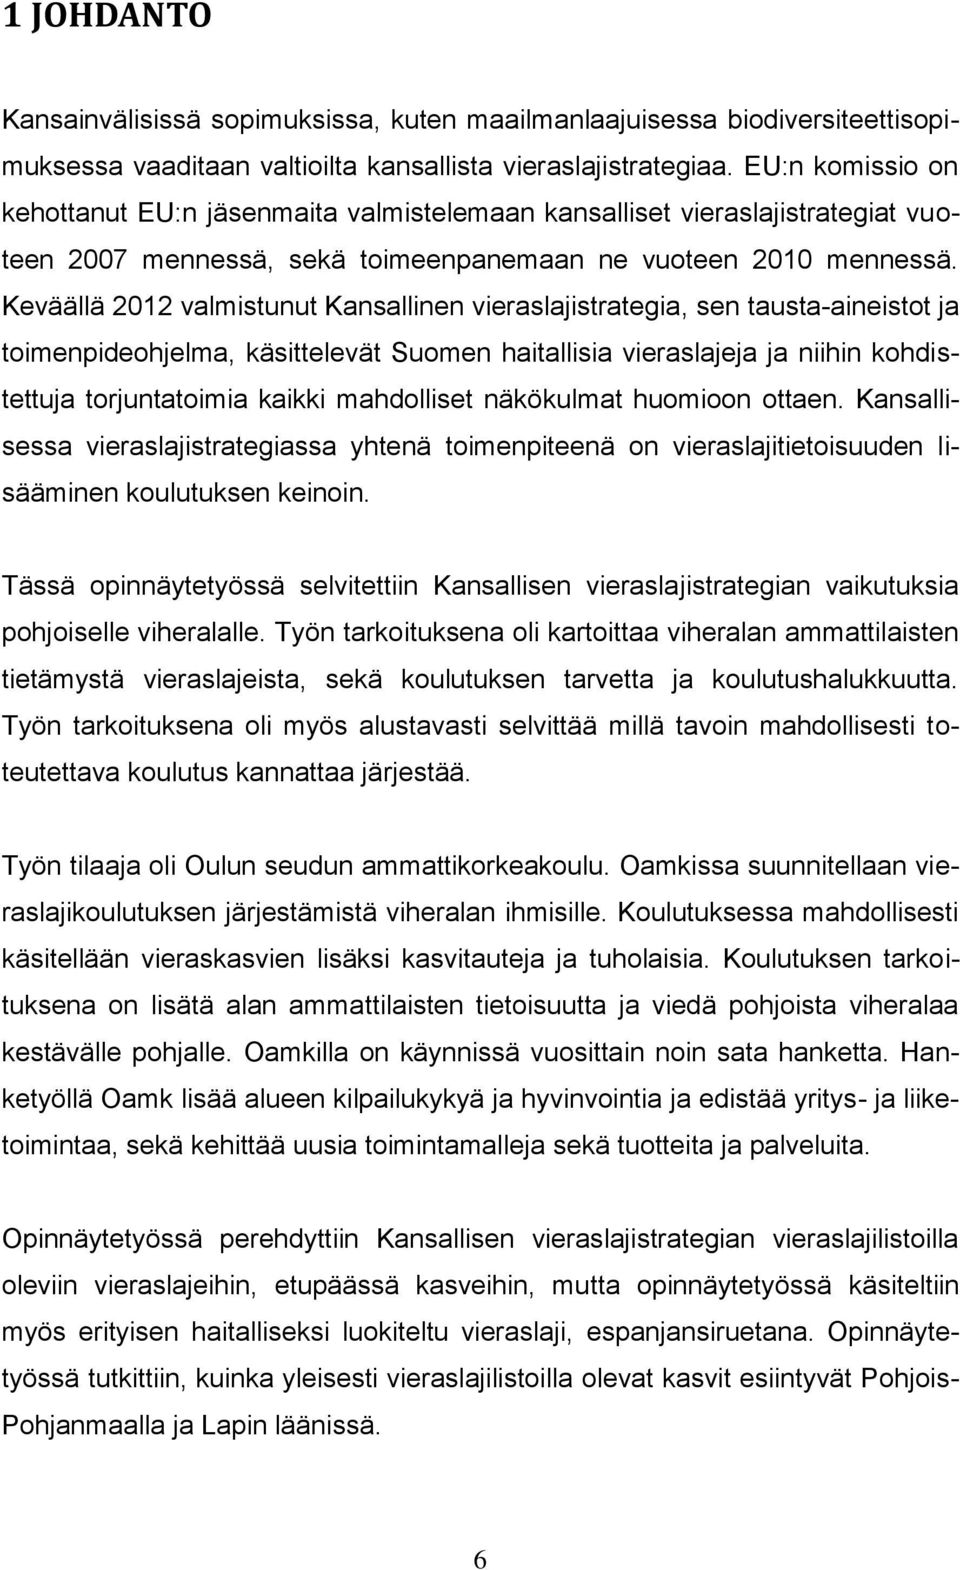 Keväällä 2012 valmistunut Kansallinen vieraslajistrategia, sen tausta-aineistot ja toimenpideohjelma, käsittelevät Suomen haitallisia vieraslajeja ja niihin kohdistettuja torjuntatoimia kaikki